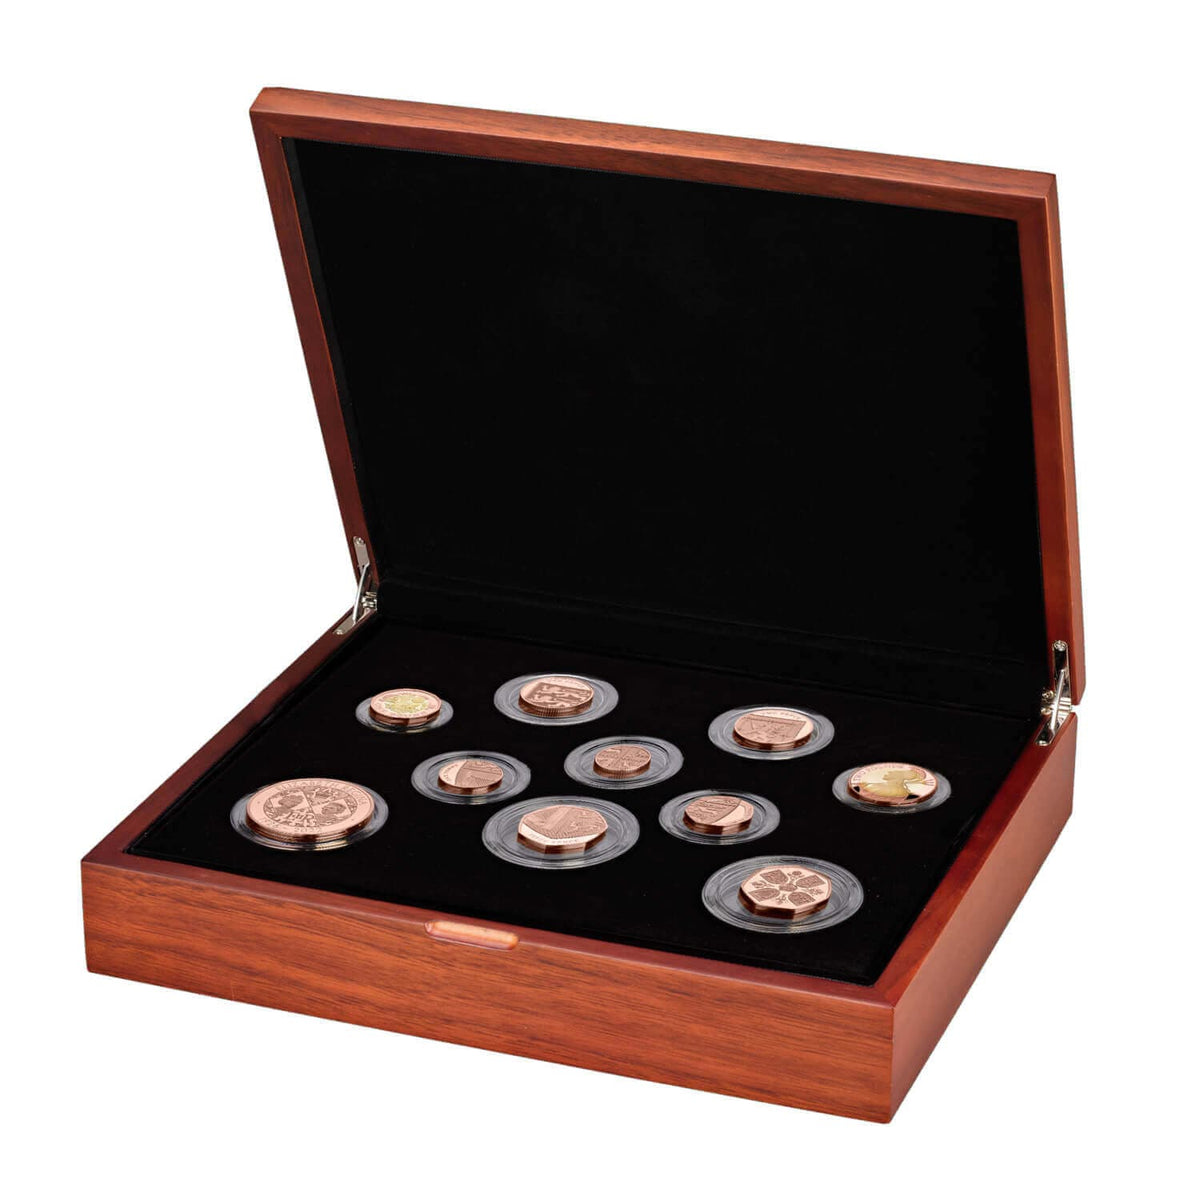 2003年 リベリア共和国発行 皇太子殿下御成婚記念 金貨 銀貨セット 